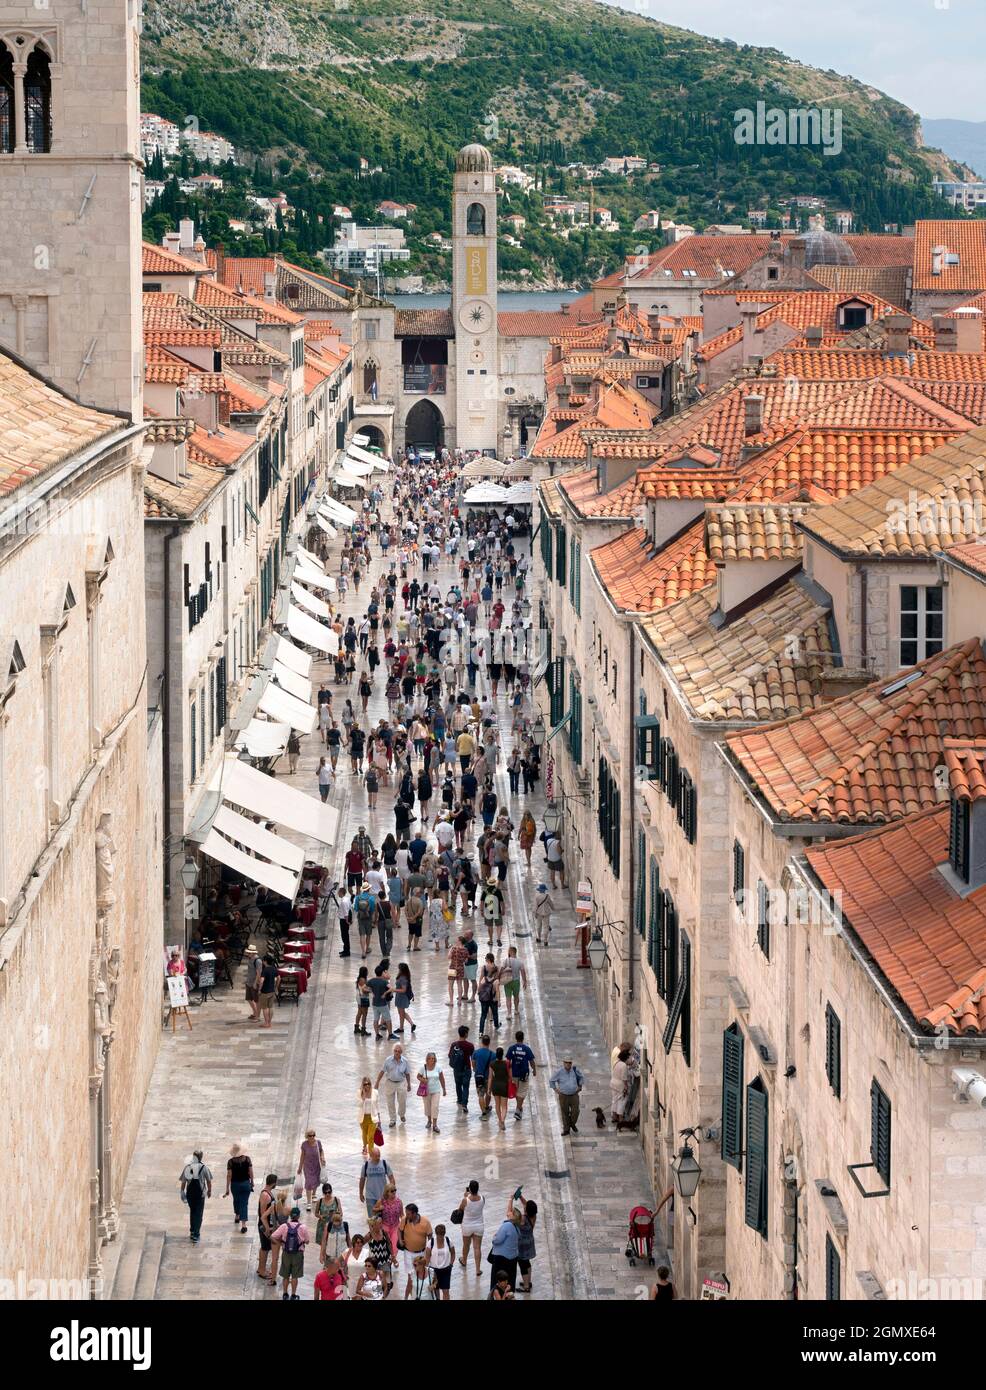 Dubrovnik, Kroatien - 10. September 2016 Dubrovnik ist eine historische kroatische Stadt an der Adria, in der Region Dalmatien. Ein UNESCO-Weltkulturerbe S Stockfoto